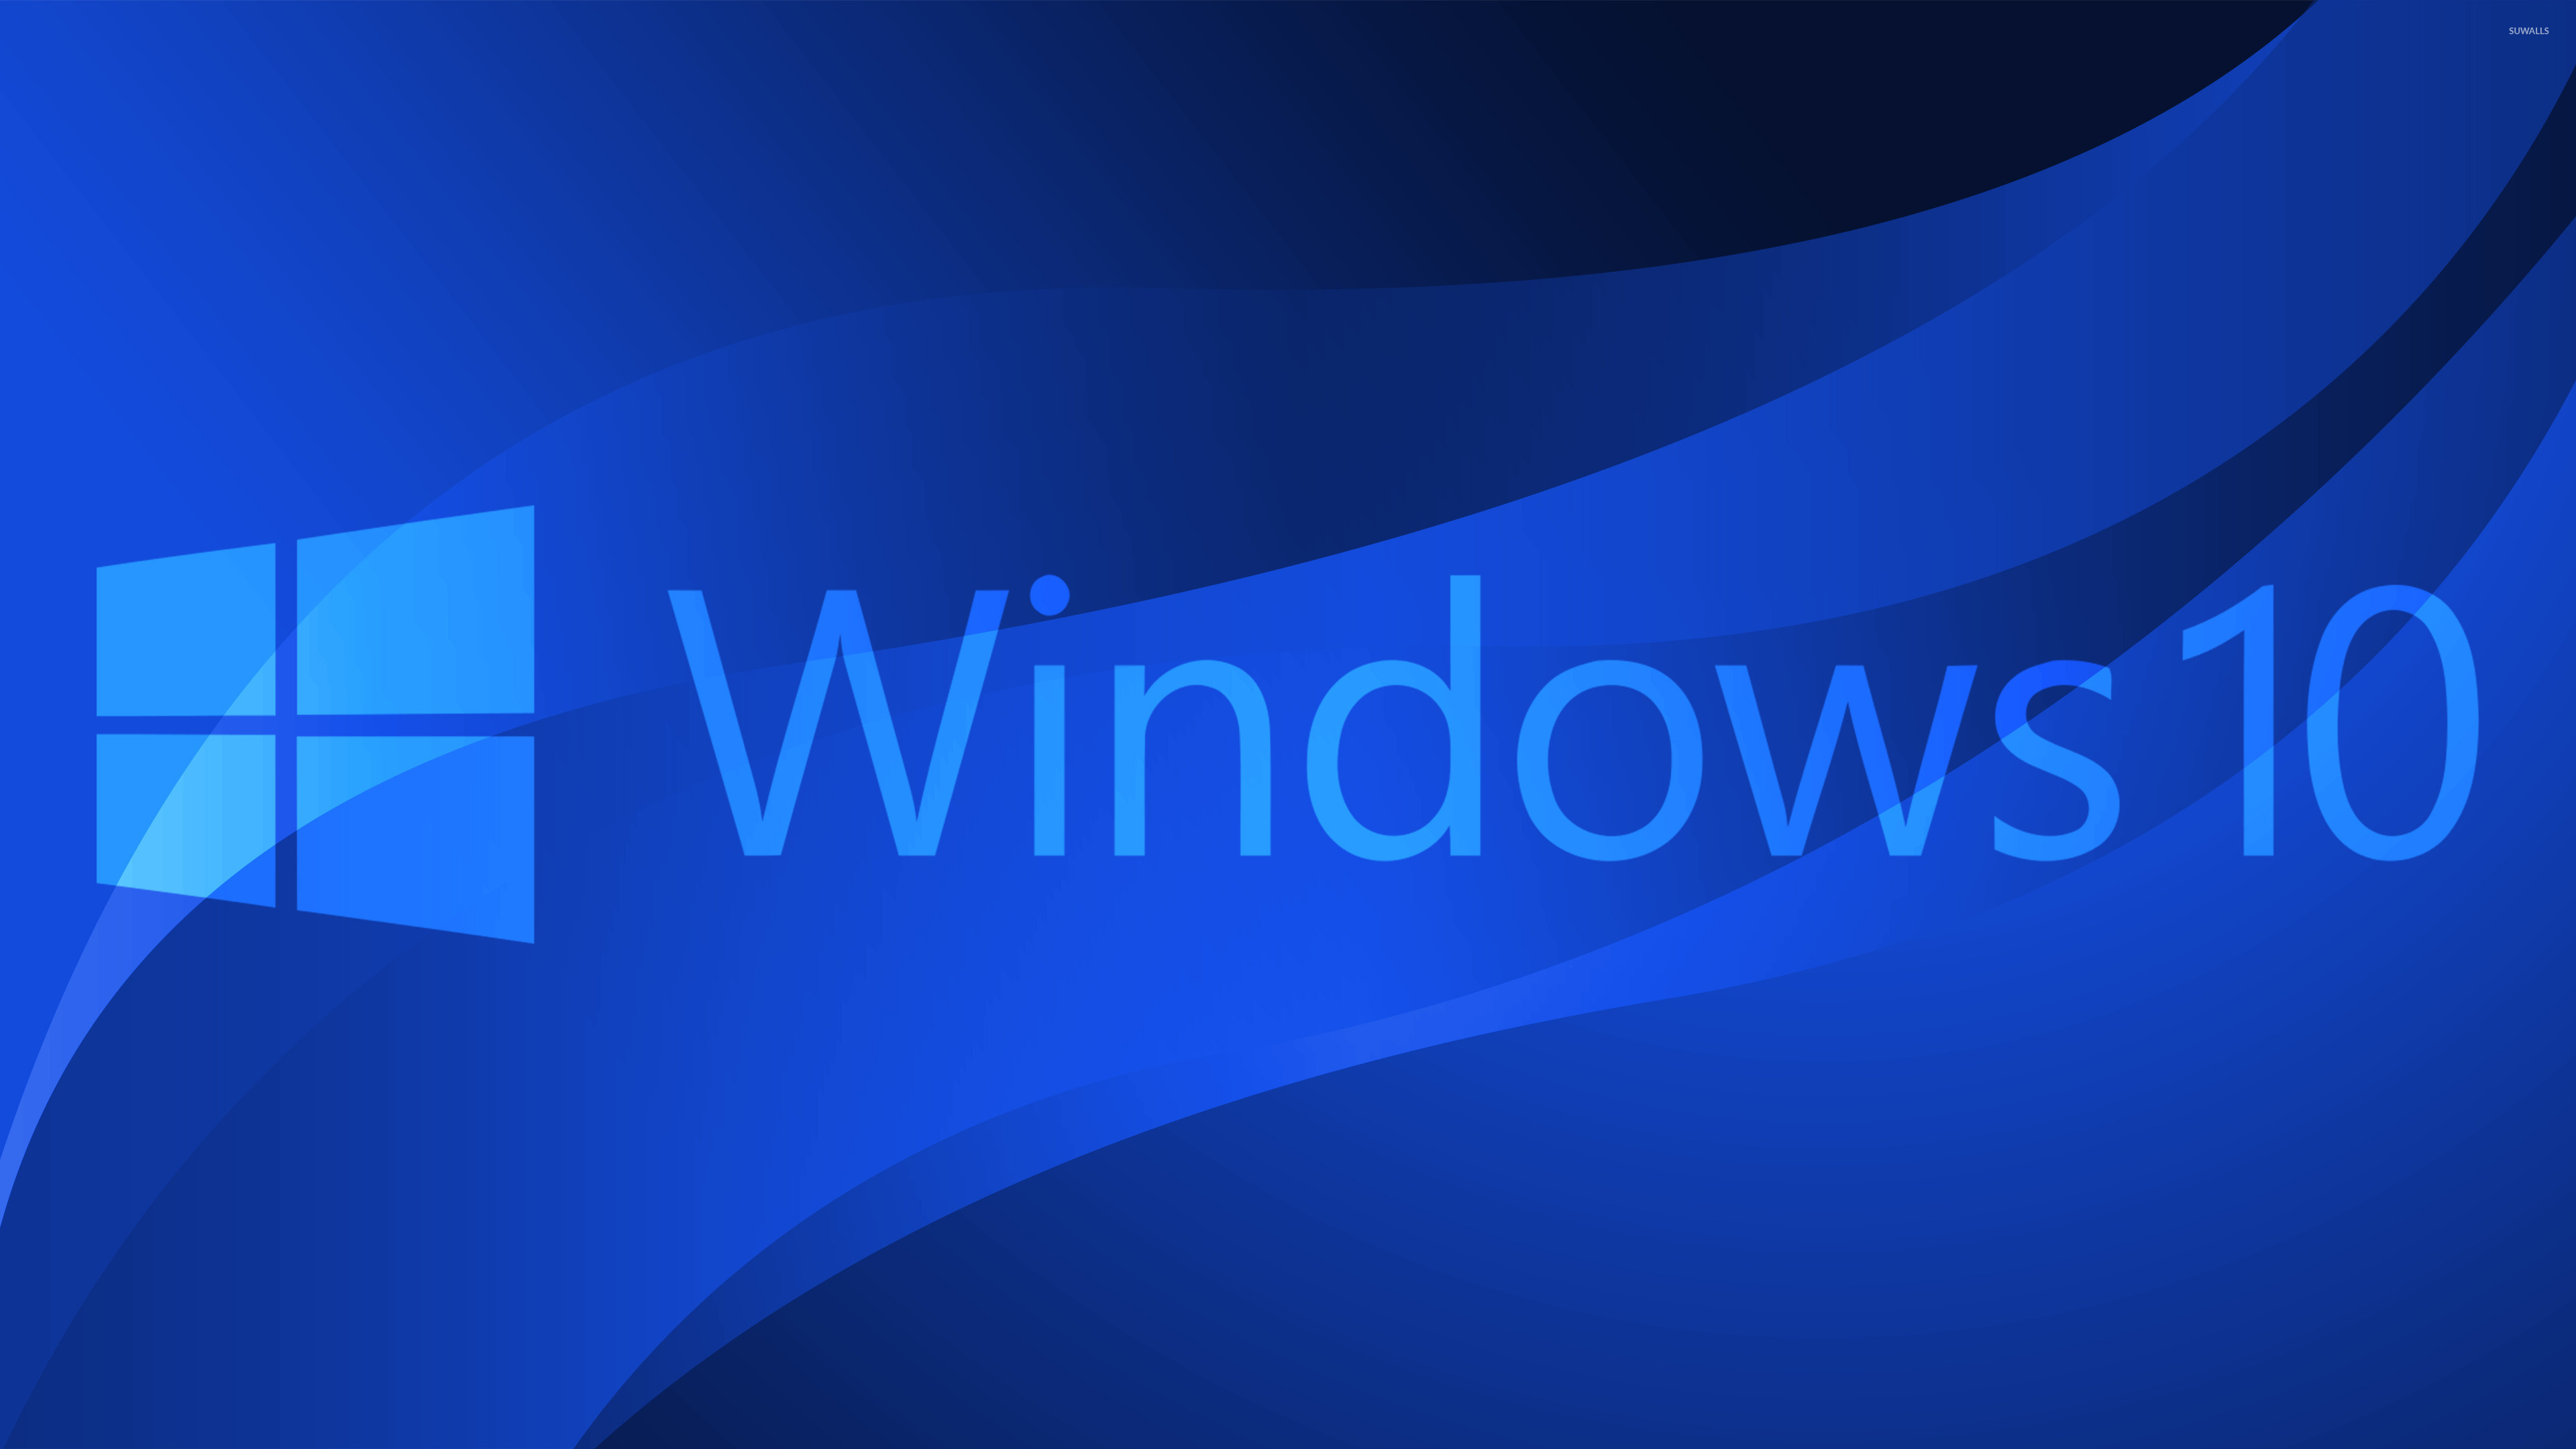 Виндовс 10 clean. Виндовс 10. Картинки Windows 10. Рабочий стол Windows 10. Логотип Windows 10.